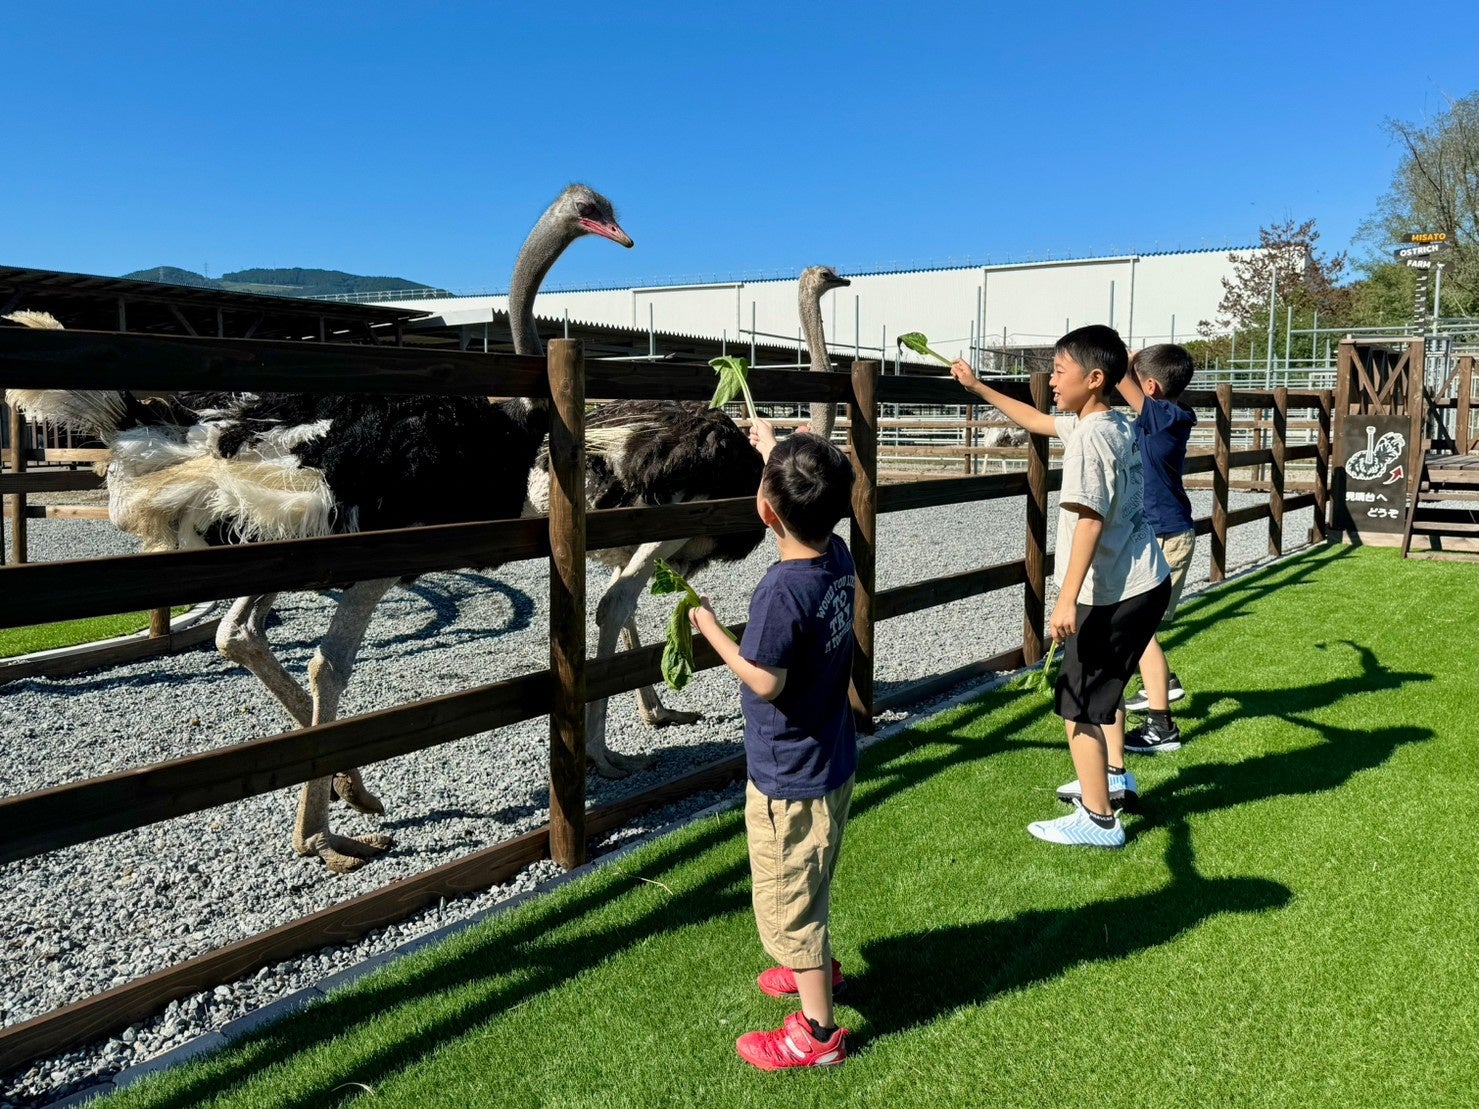 新しい体験を! 美里オーストリッチファーム 「ふれあいエリアのリニューアル」と「Ostrich Museum」の一周年企画展のサブ画像1